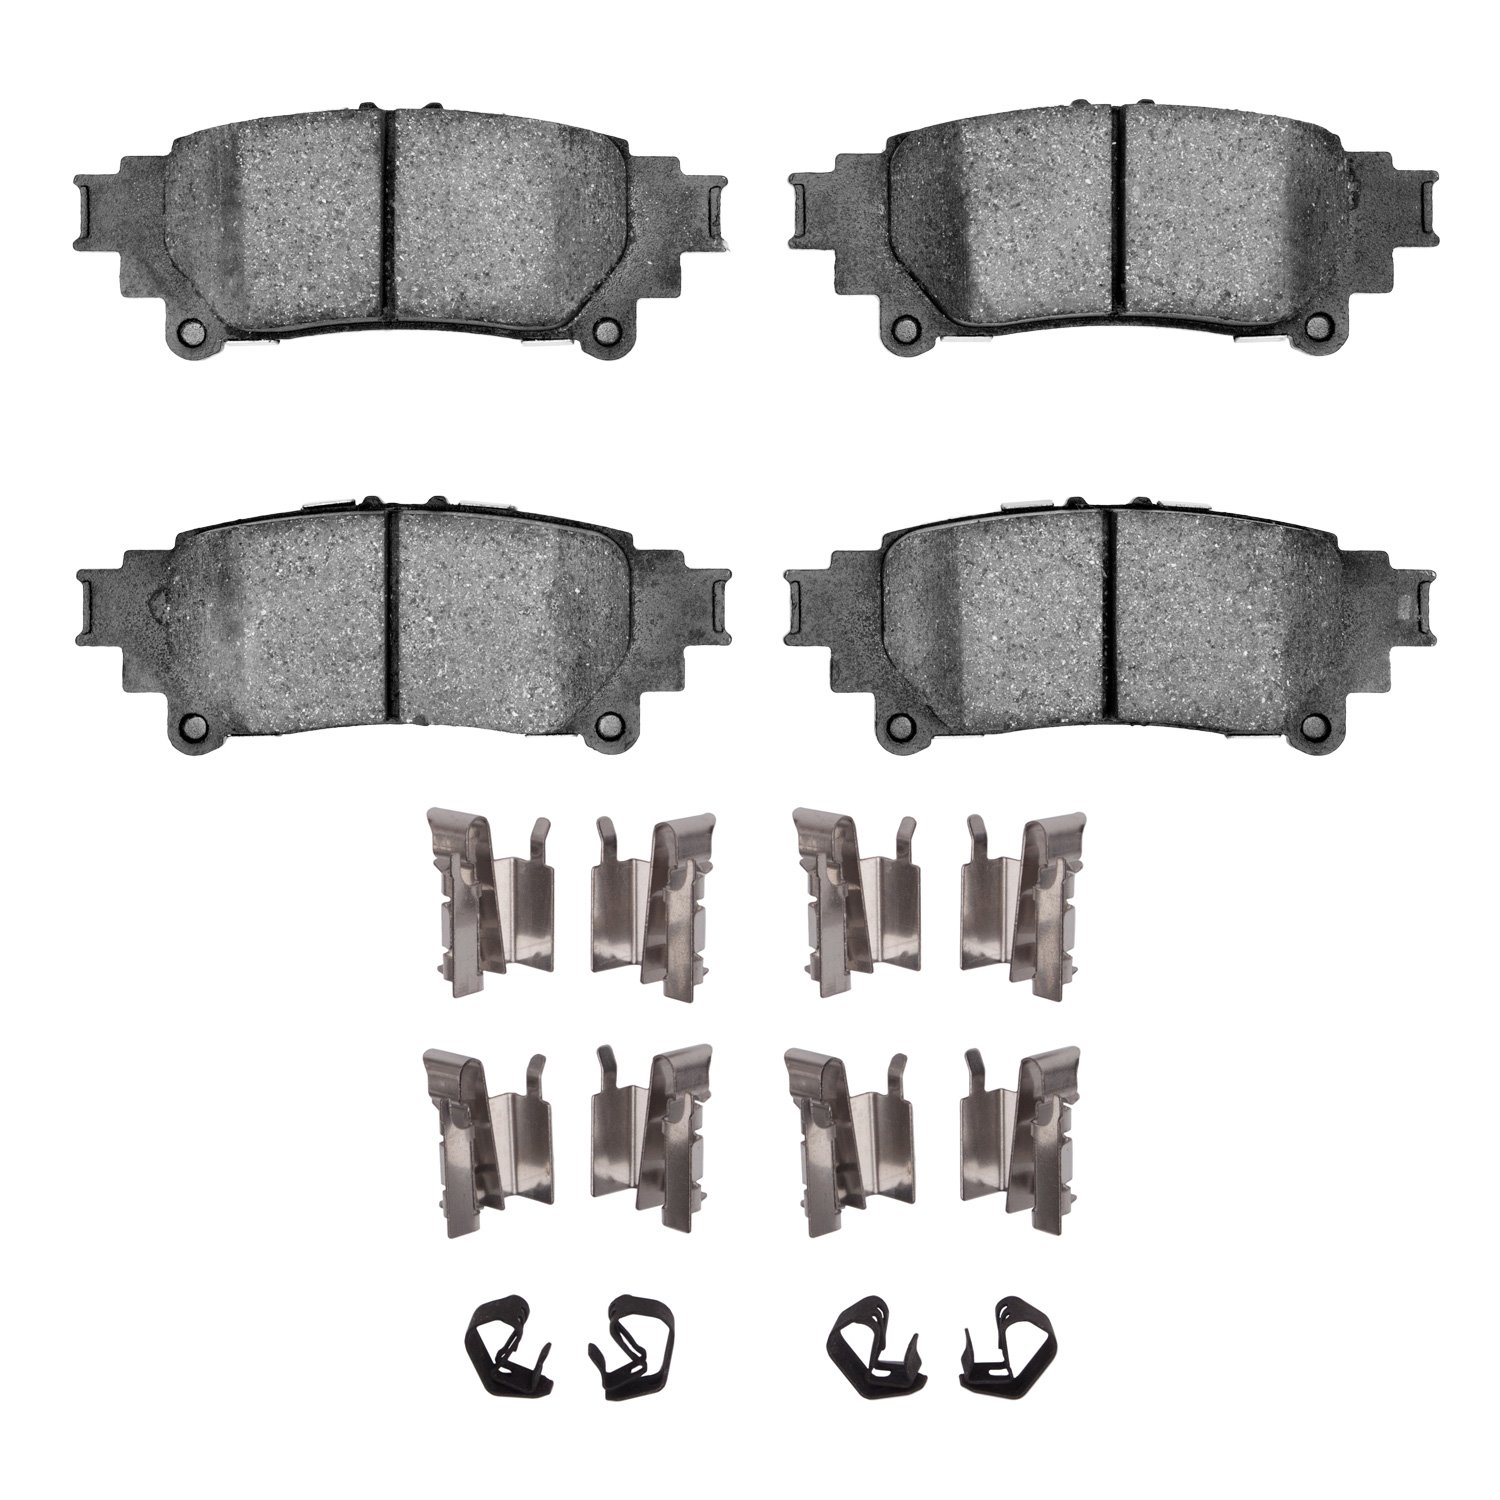 1310-1391-12 3000-Series Ceramic Brake Pads & Hardware Kit, 2013-2020 Lexus/Toyota/Scion, Position: Rear